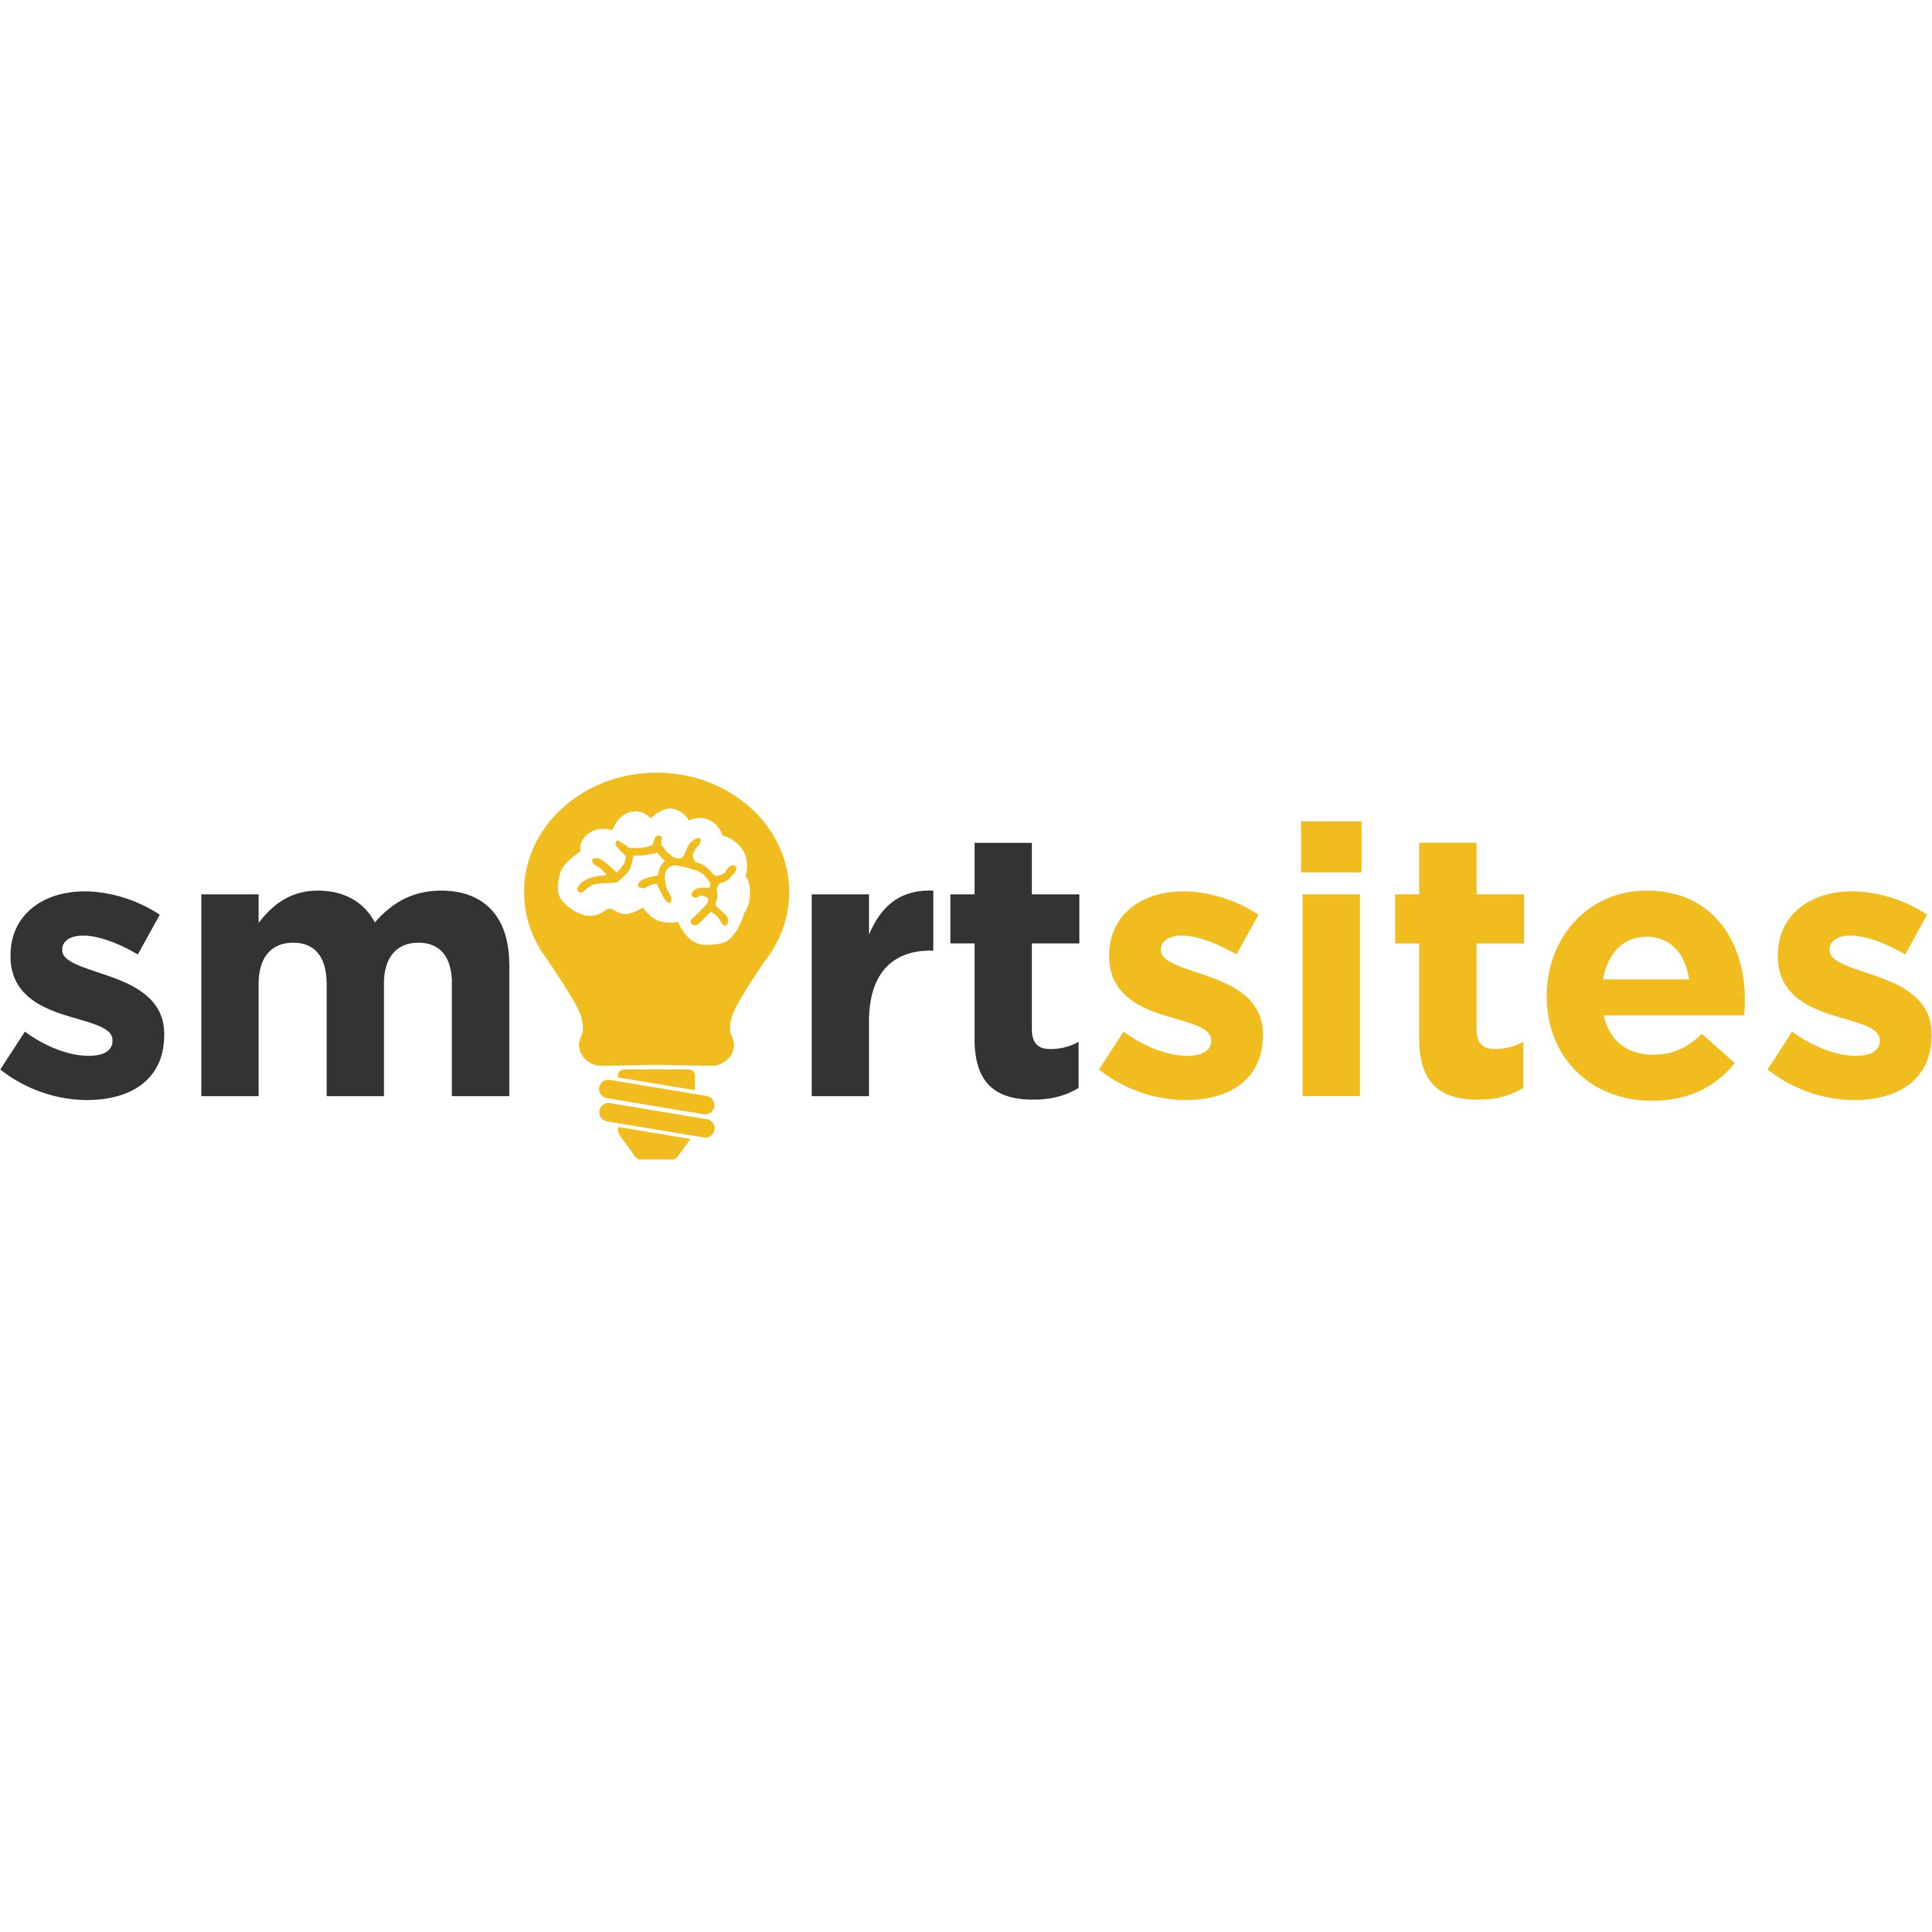 Top Twitter Pay-Per-Click Company Logo: SmartSites